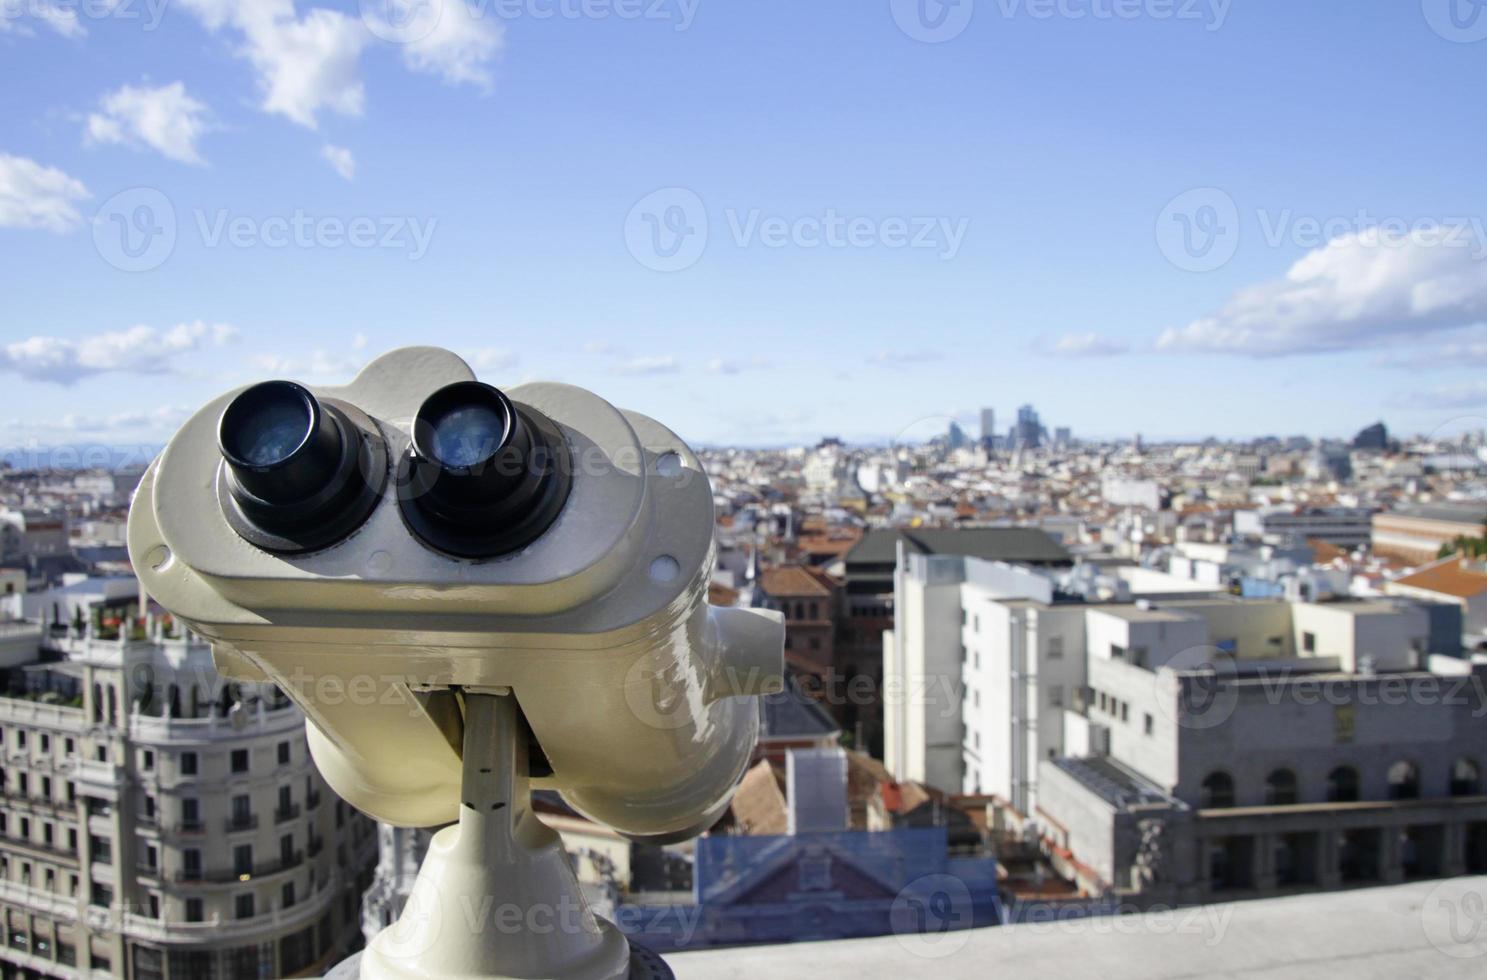 binoculares y el paisaje urbano de madrid, españa foto